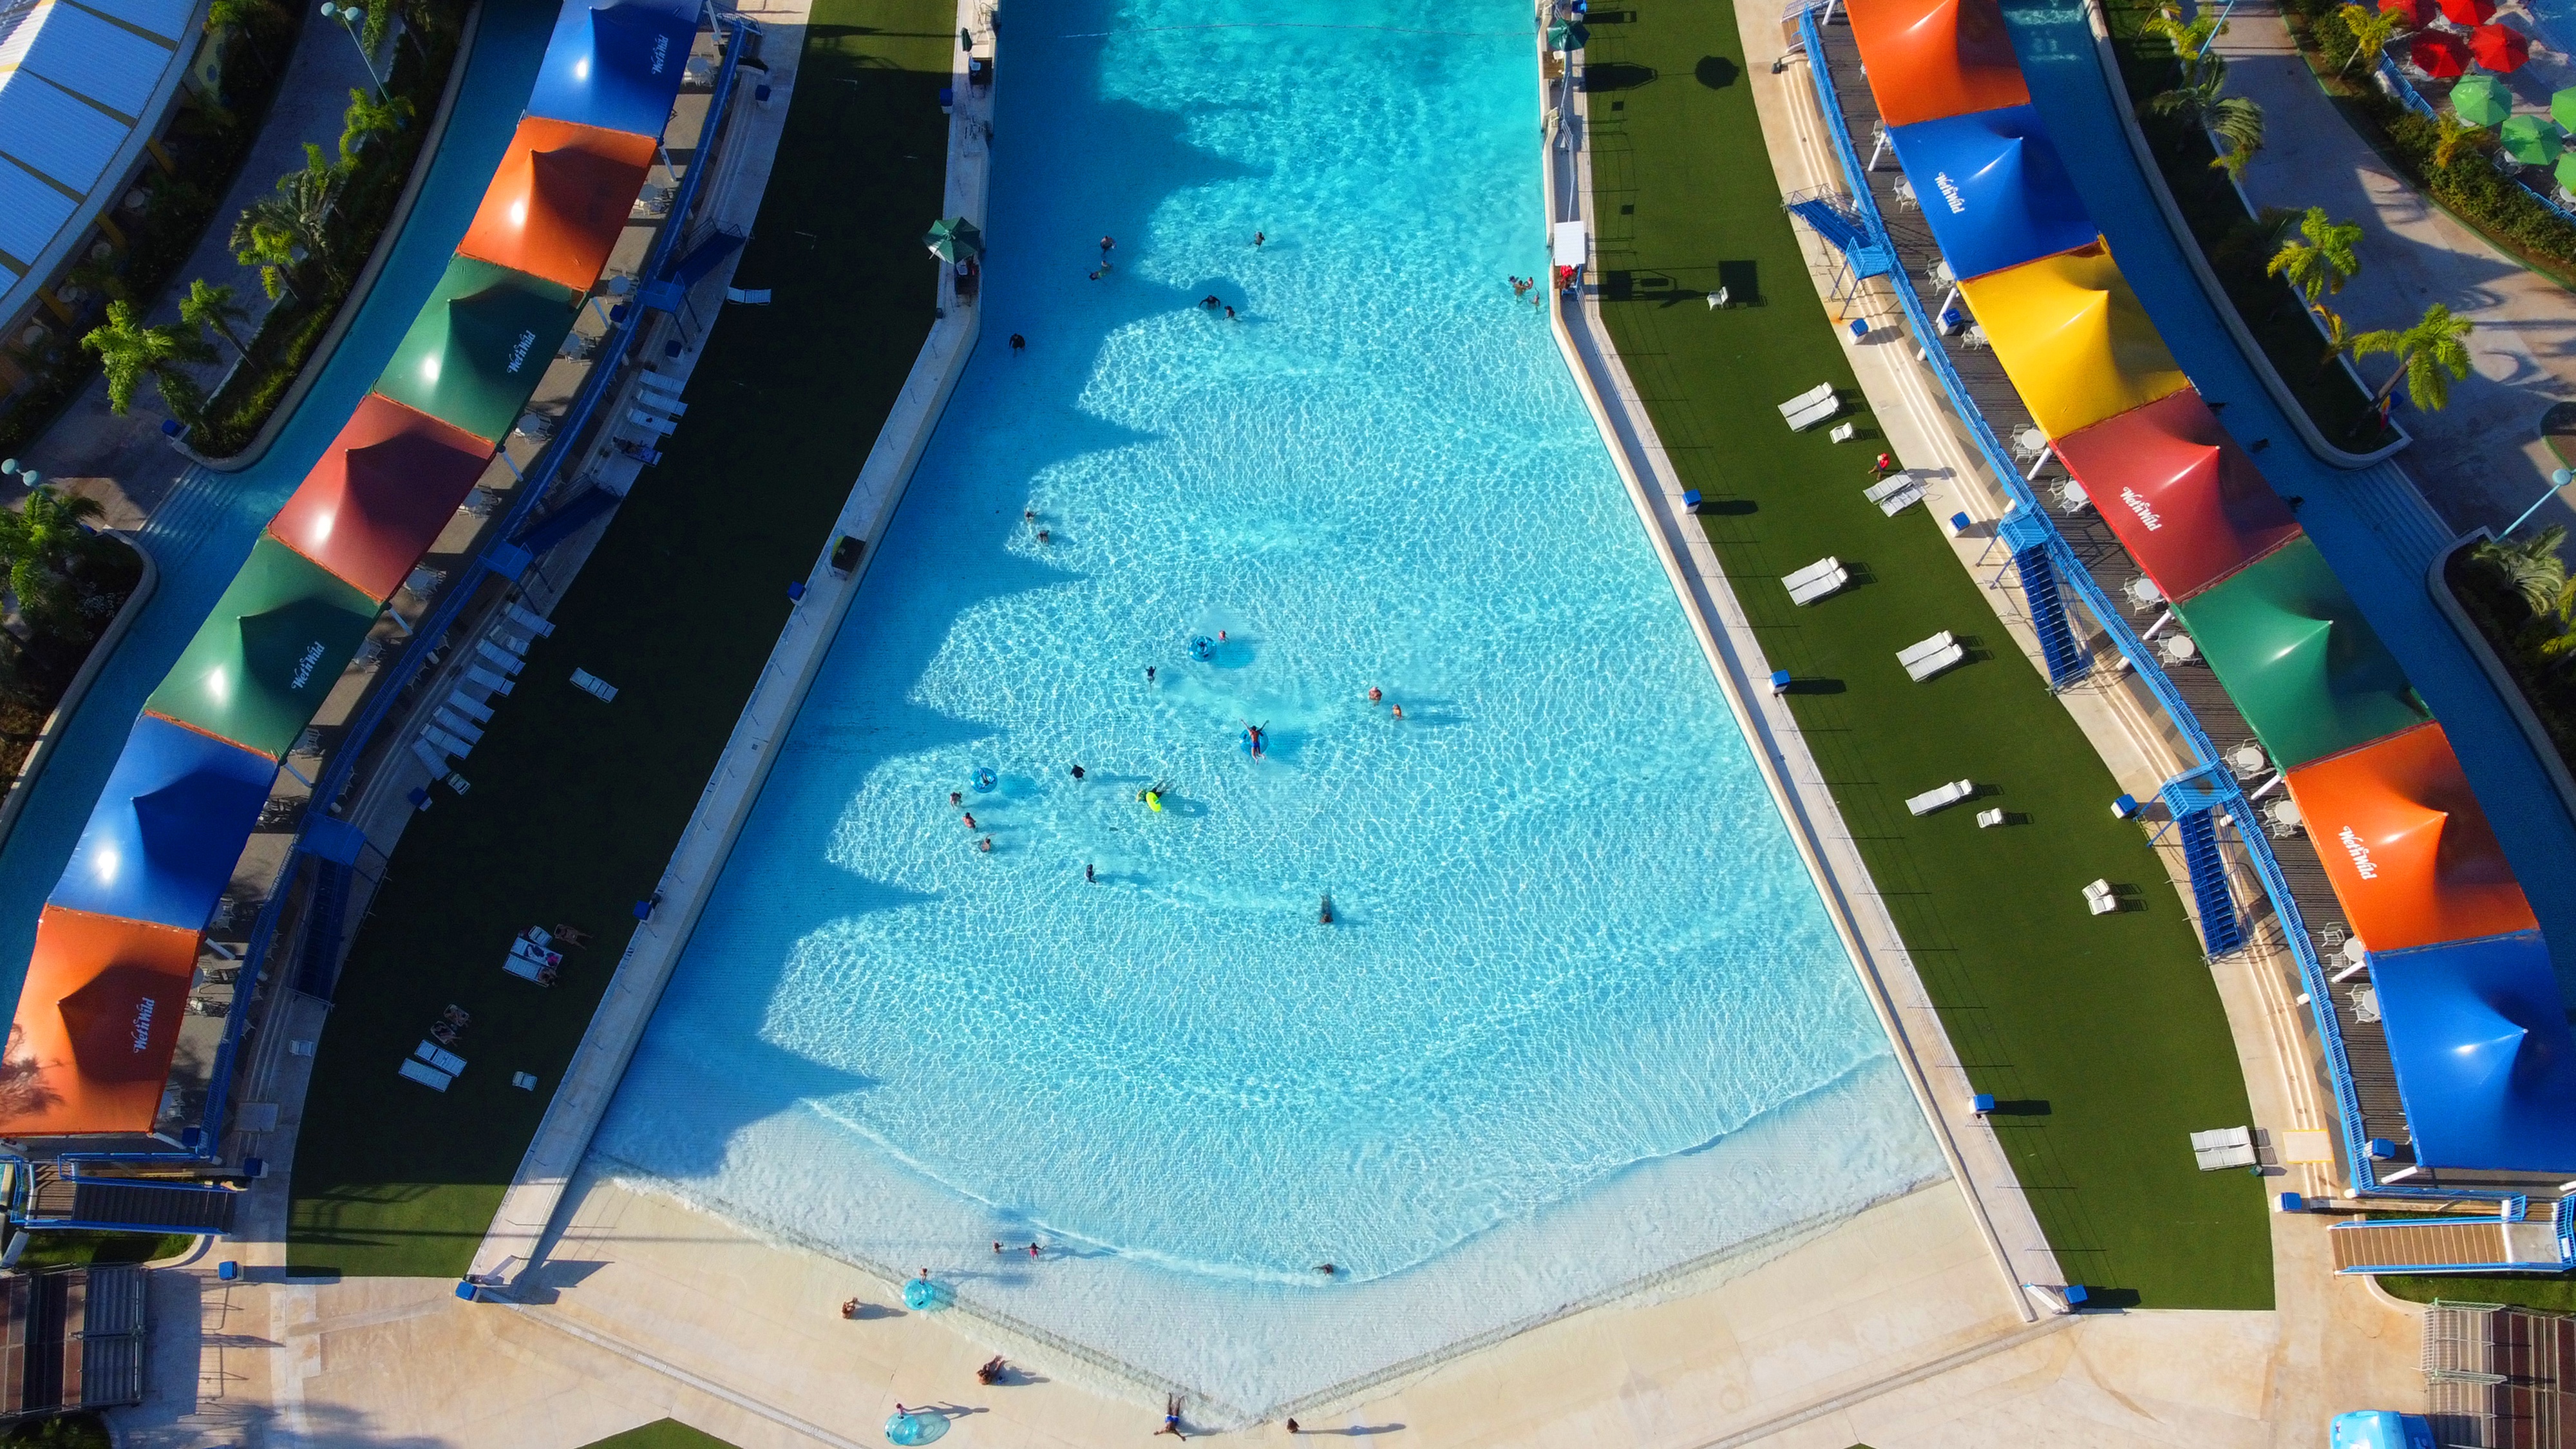 A imagem mostra um,a piscina de ondas vista de cima. Ao redor da atração, é possível ver tendas de diversas cores.